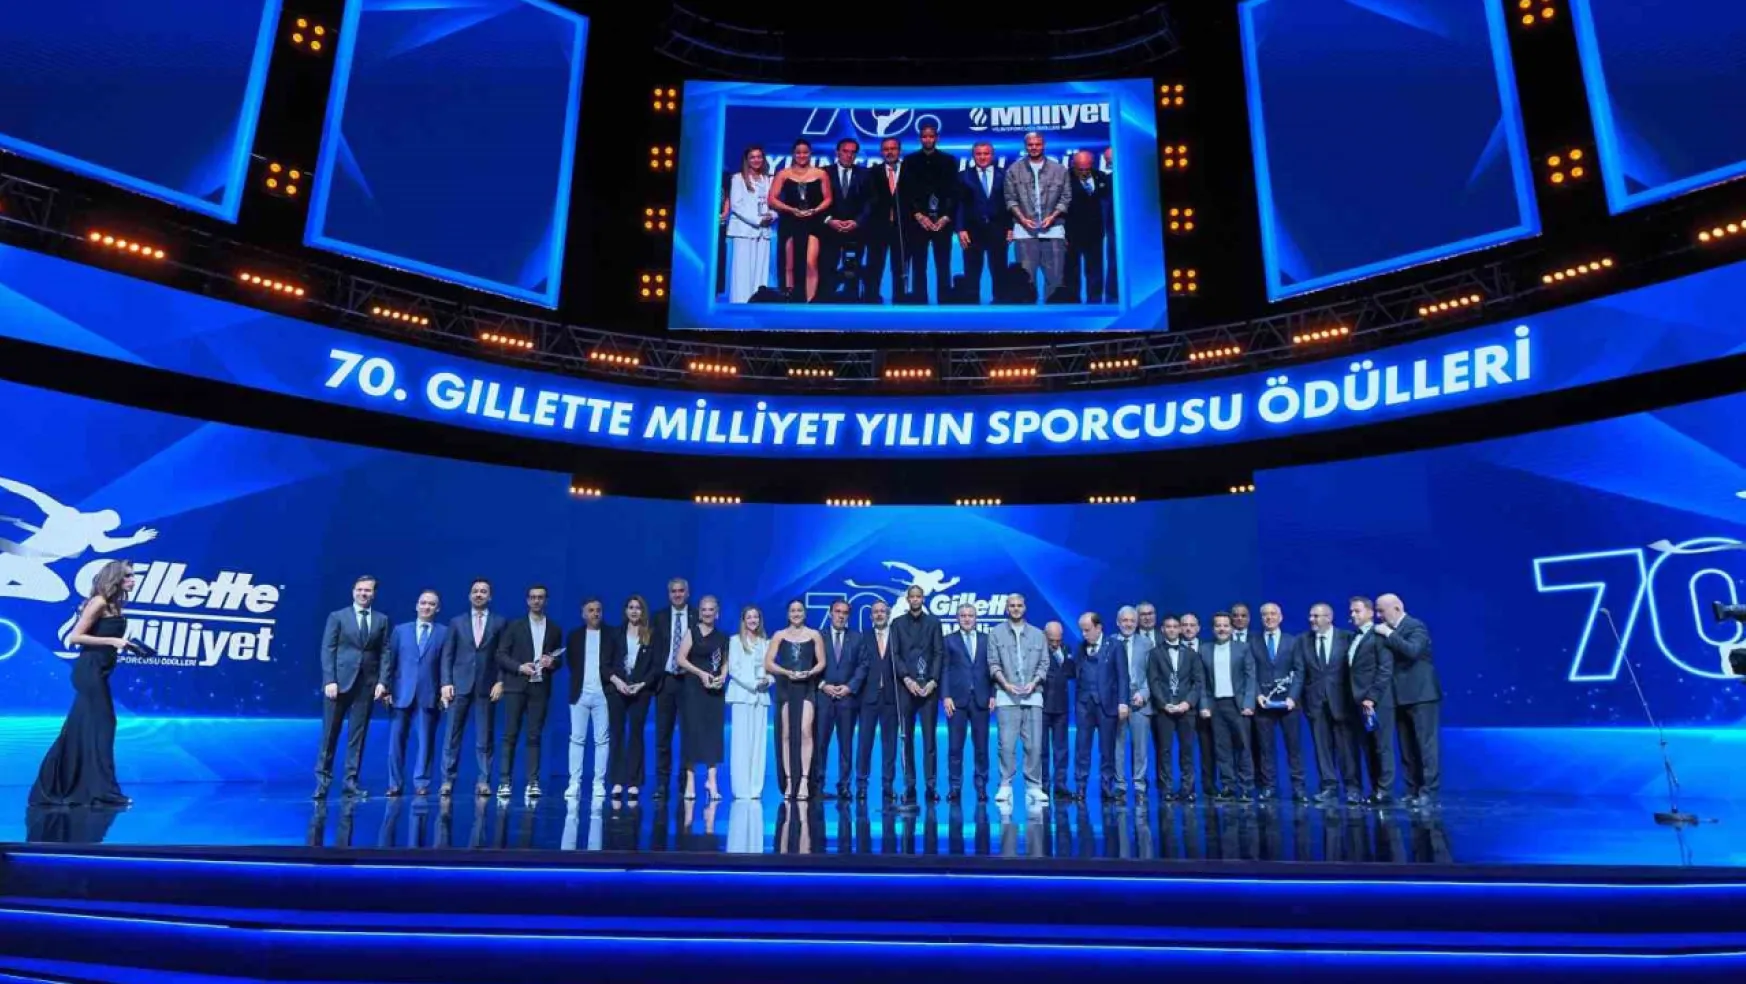 Milliyet Yılın Sporcusu Ödülleri töreni yapıldı